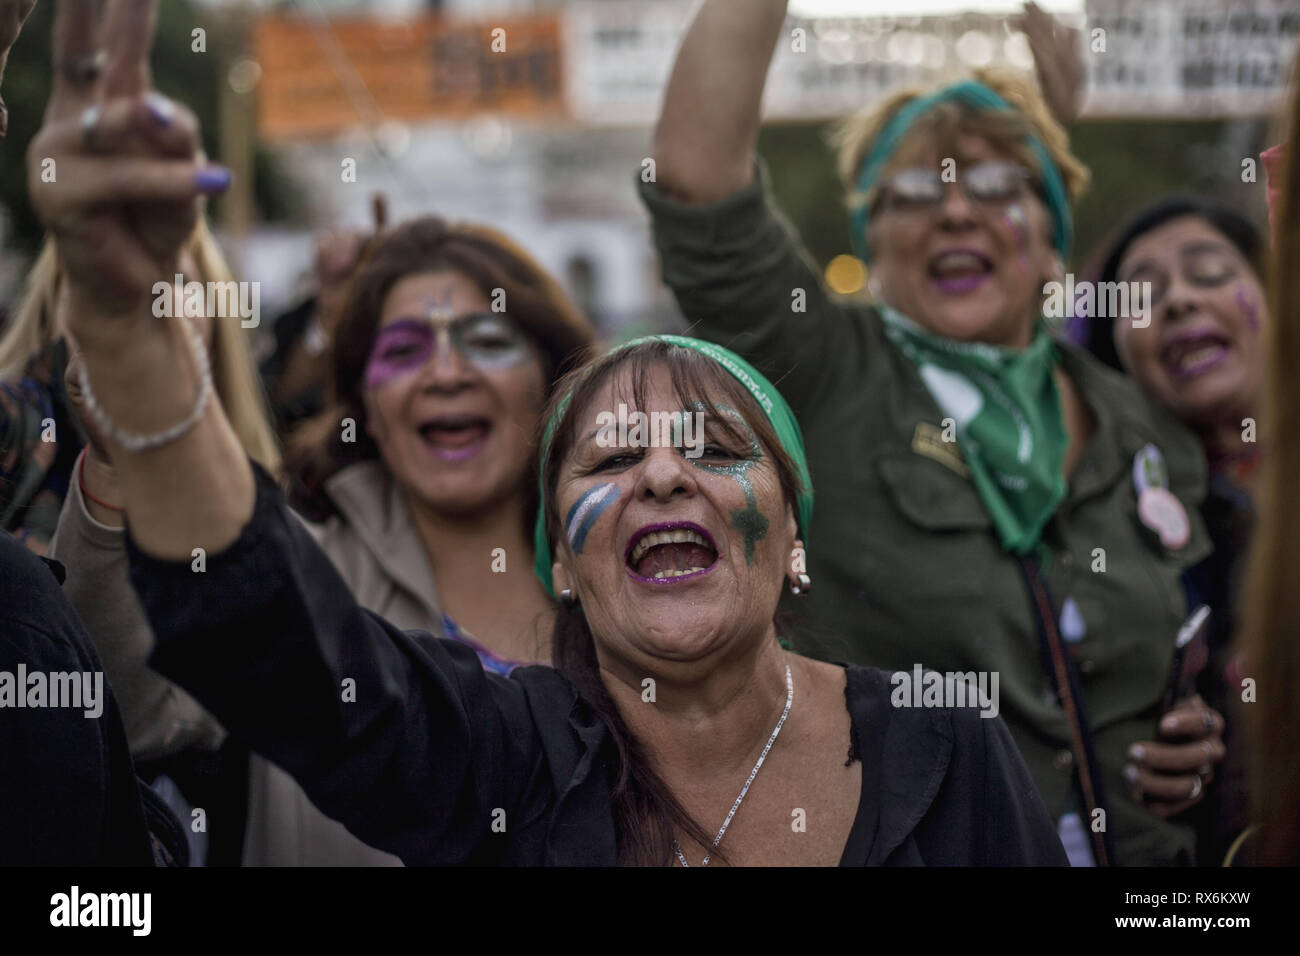 Buenos Aires, capitale fédérale, l'Argentine. Mar 8, 2019. À l'occasion de la Journée internationale de la femme, des groupes féministes de partout au pays ont appelé à une marche à travers le pays. À environ 8:30 h, plus de 100 mille personnes ont participé à la mobilisation et la concentration.Dans le centre de Buenos Aires, depuis le matin, différents groupes de femmes sont descendus dans la rue pour faire entendre leurs revendications. Dans les rues entourant le Congrès national il y a plusieurs groupes qui a affirmé dès les premières heures de l'après-midi pour les droits des femmes. (Crédit Image : © Roberto UN Banque D'Images